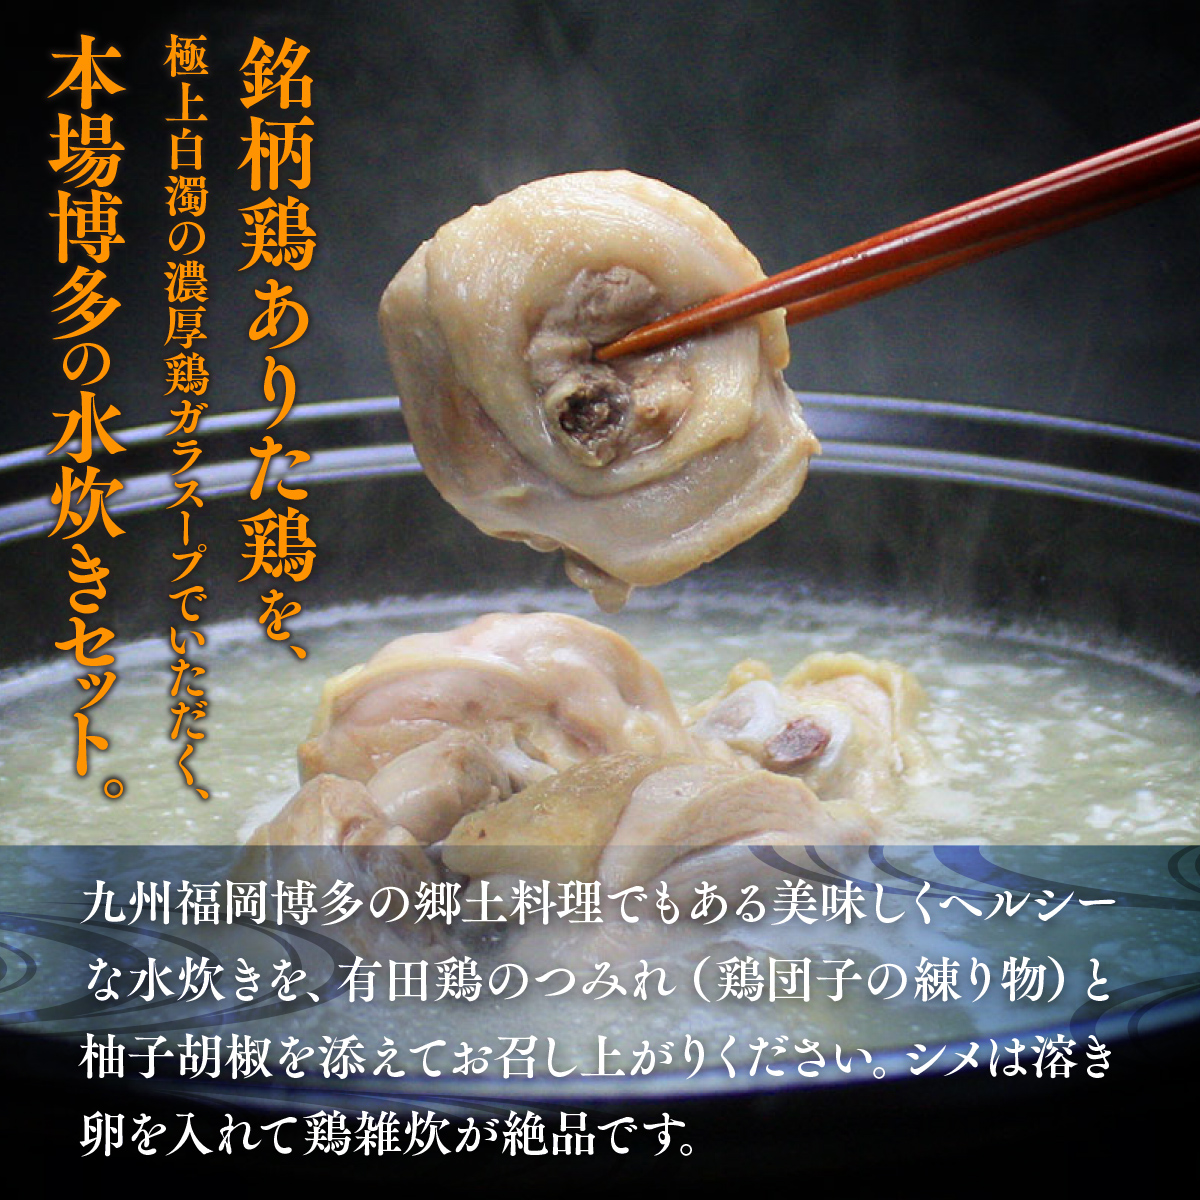 博多水炊き（ありた鶏ぶつ切り・つみれ）セット4〜6人前 UX007